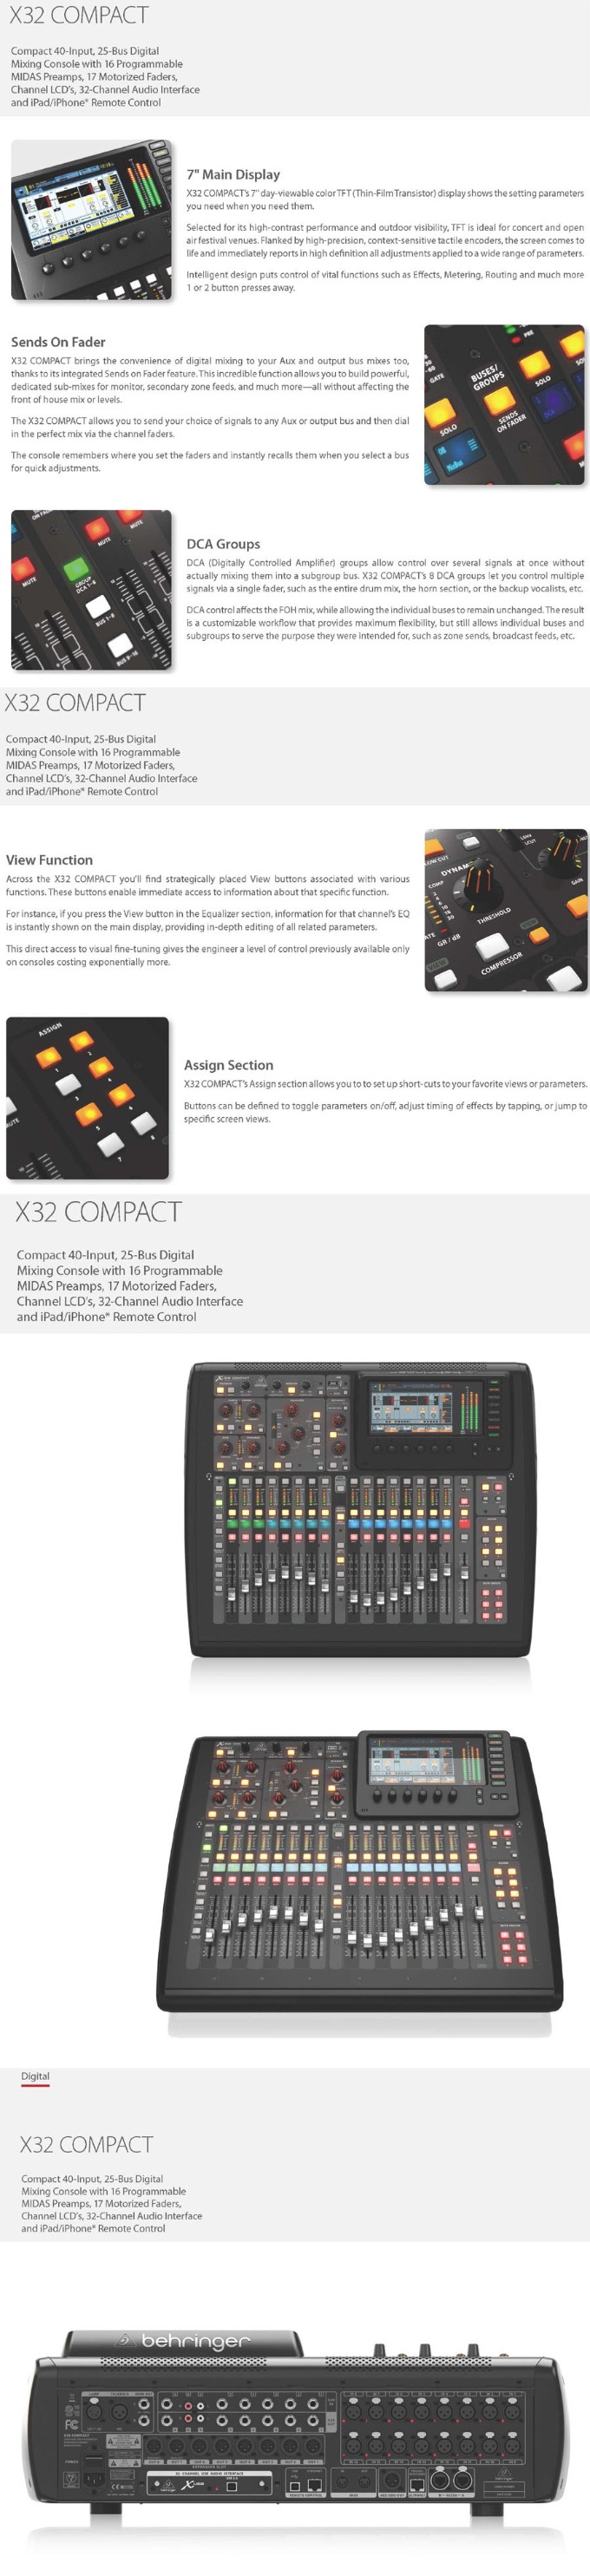 X32 COMPACT MENU-2.jpg